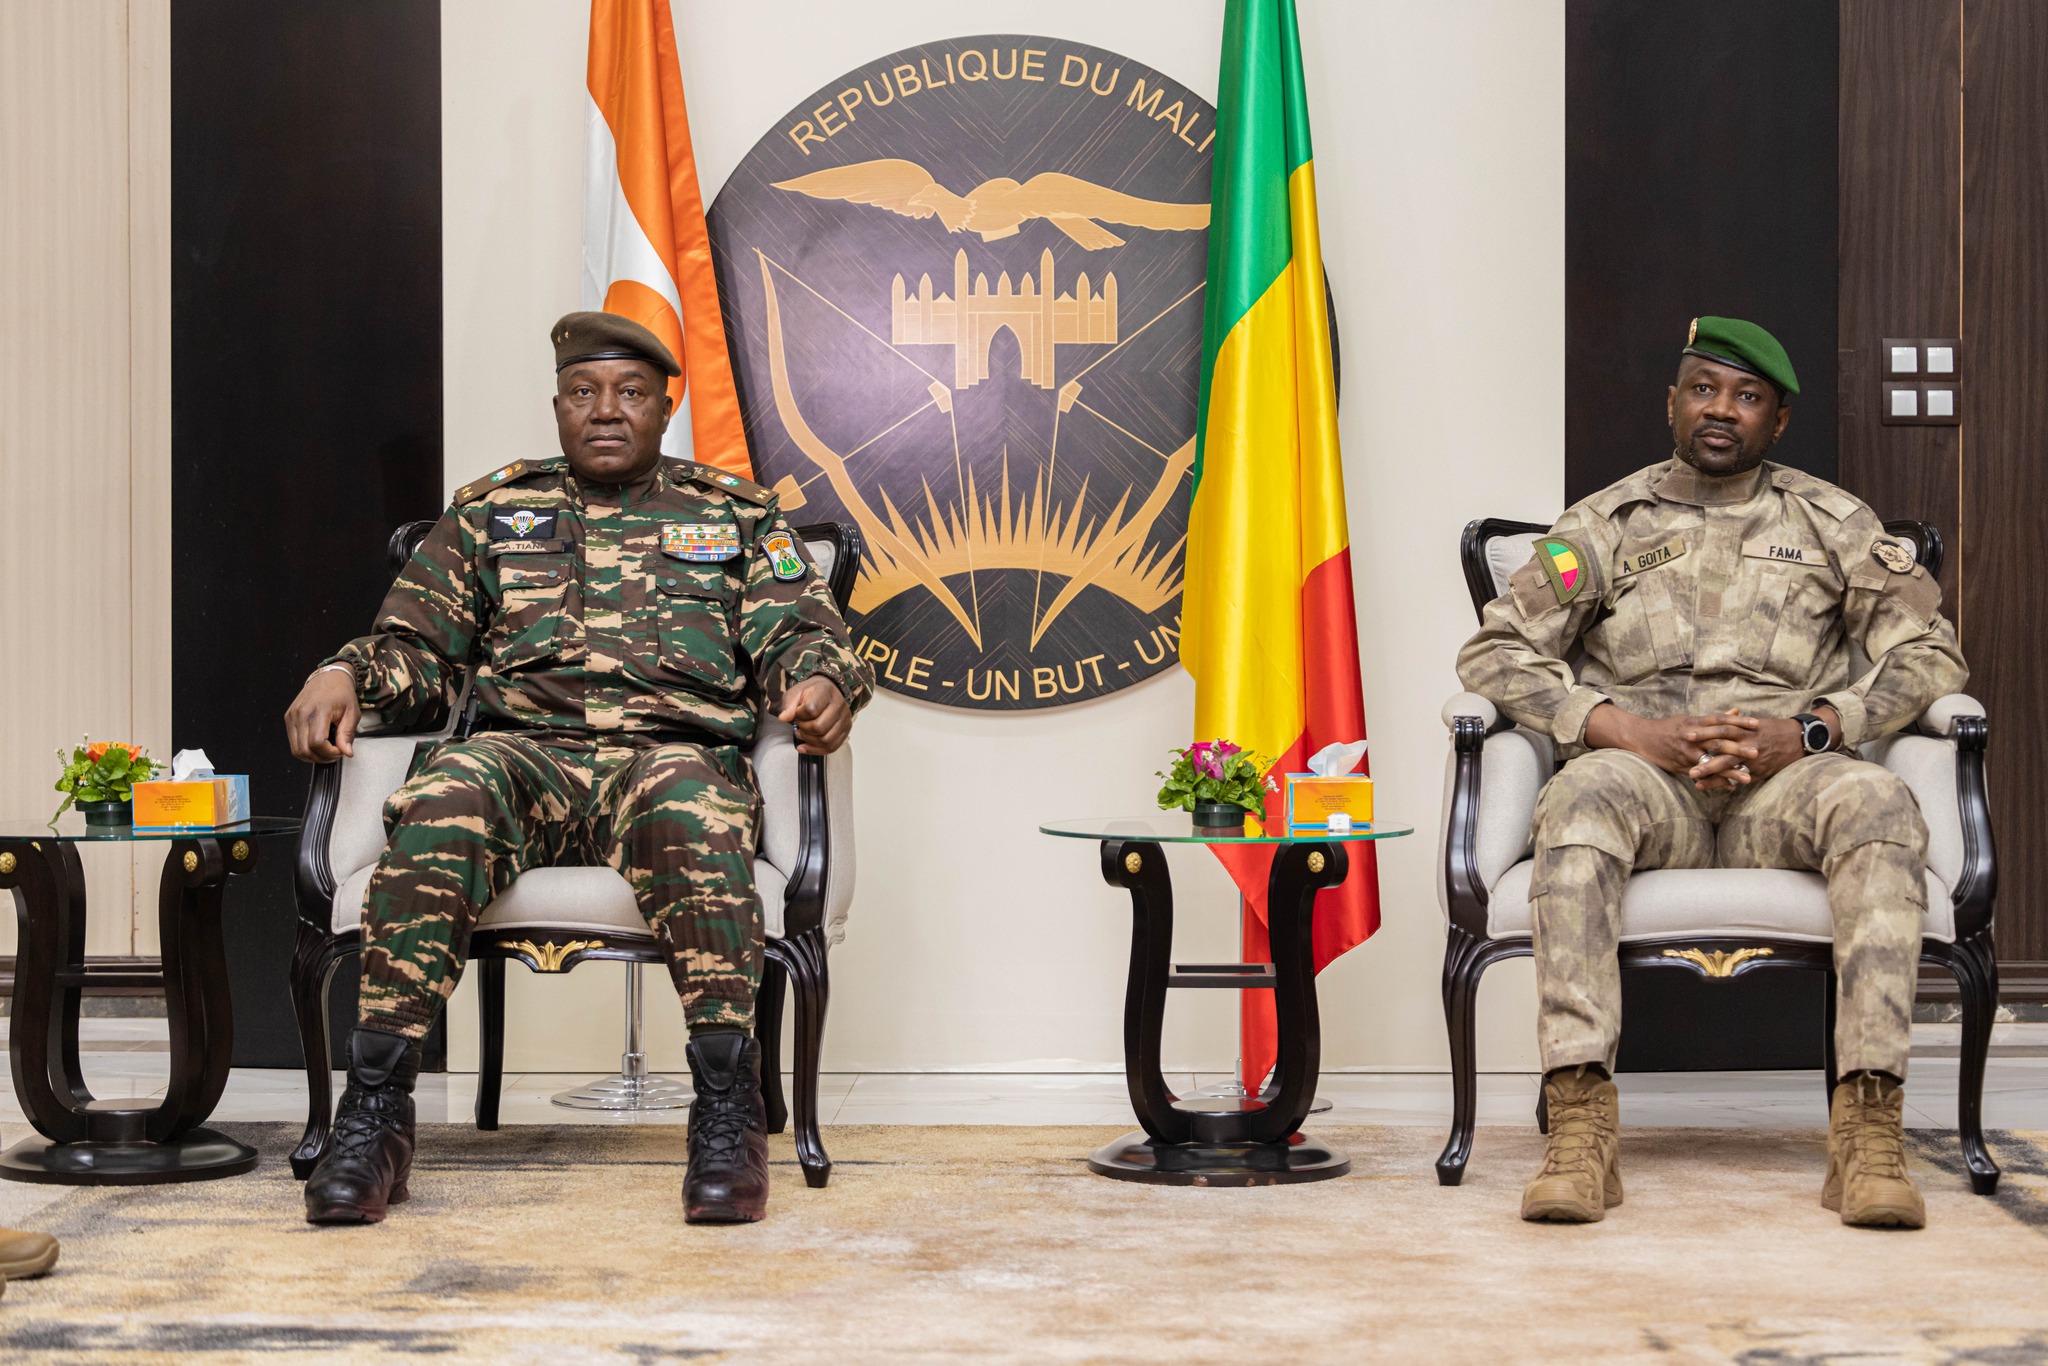 Après le Burkina Faso, rétablissement de la double imposition pour la France par le Mali et le Niger : L’AES et la Russie s’installent, Exit les missions et intérêts français et occidentaux 